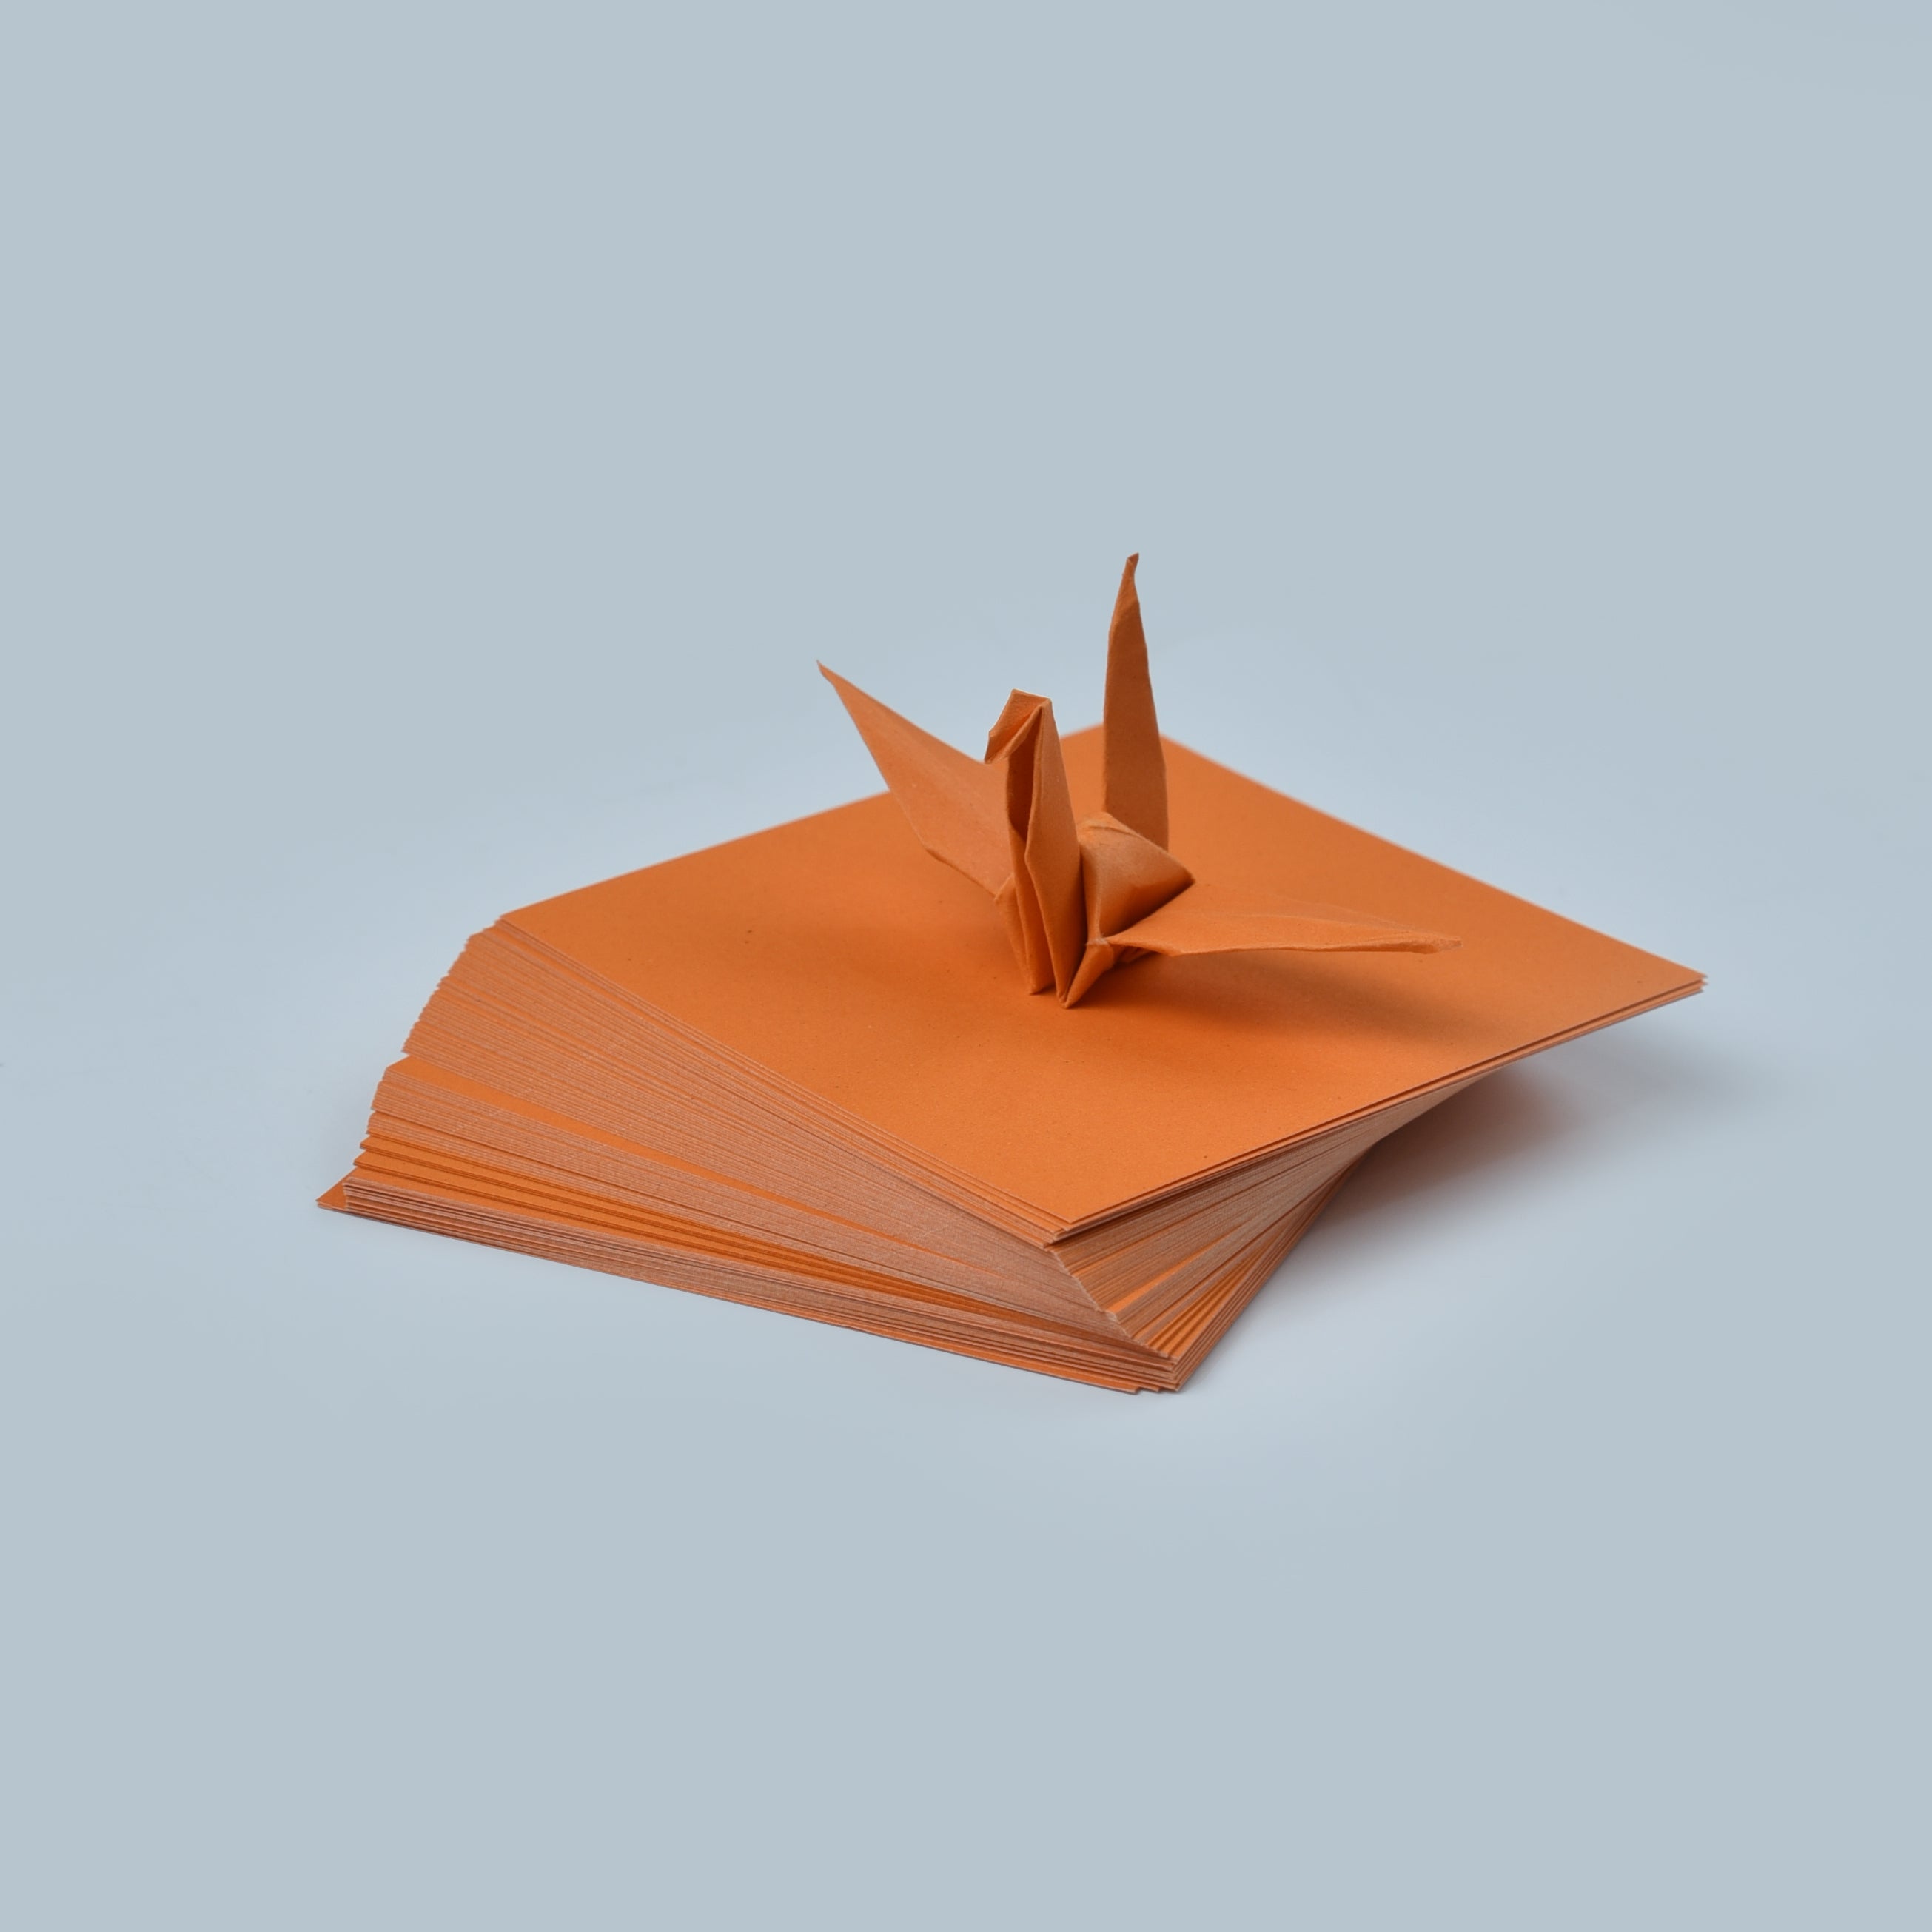 100 Hojas de Papel Origami - 3x3 pulgadas - Paquete de Papel Cuadrado para Plegar, Grullas de Origami y Decoración - S03